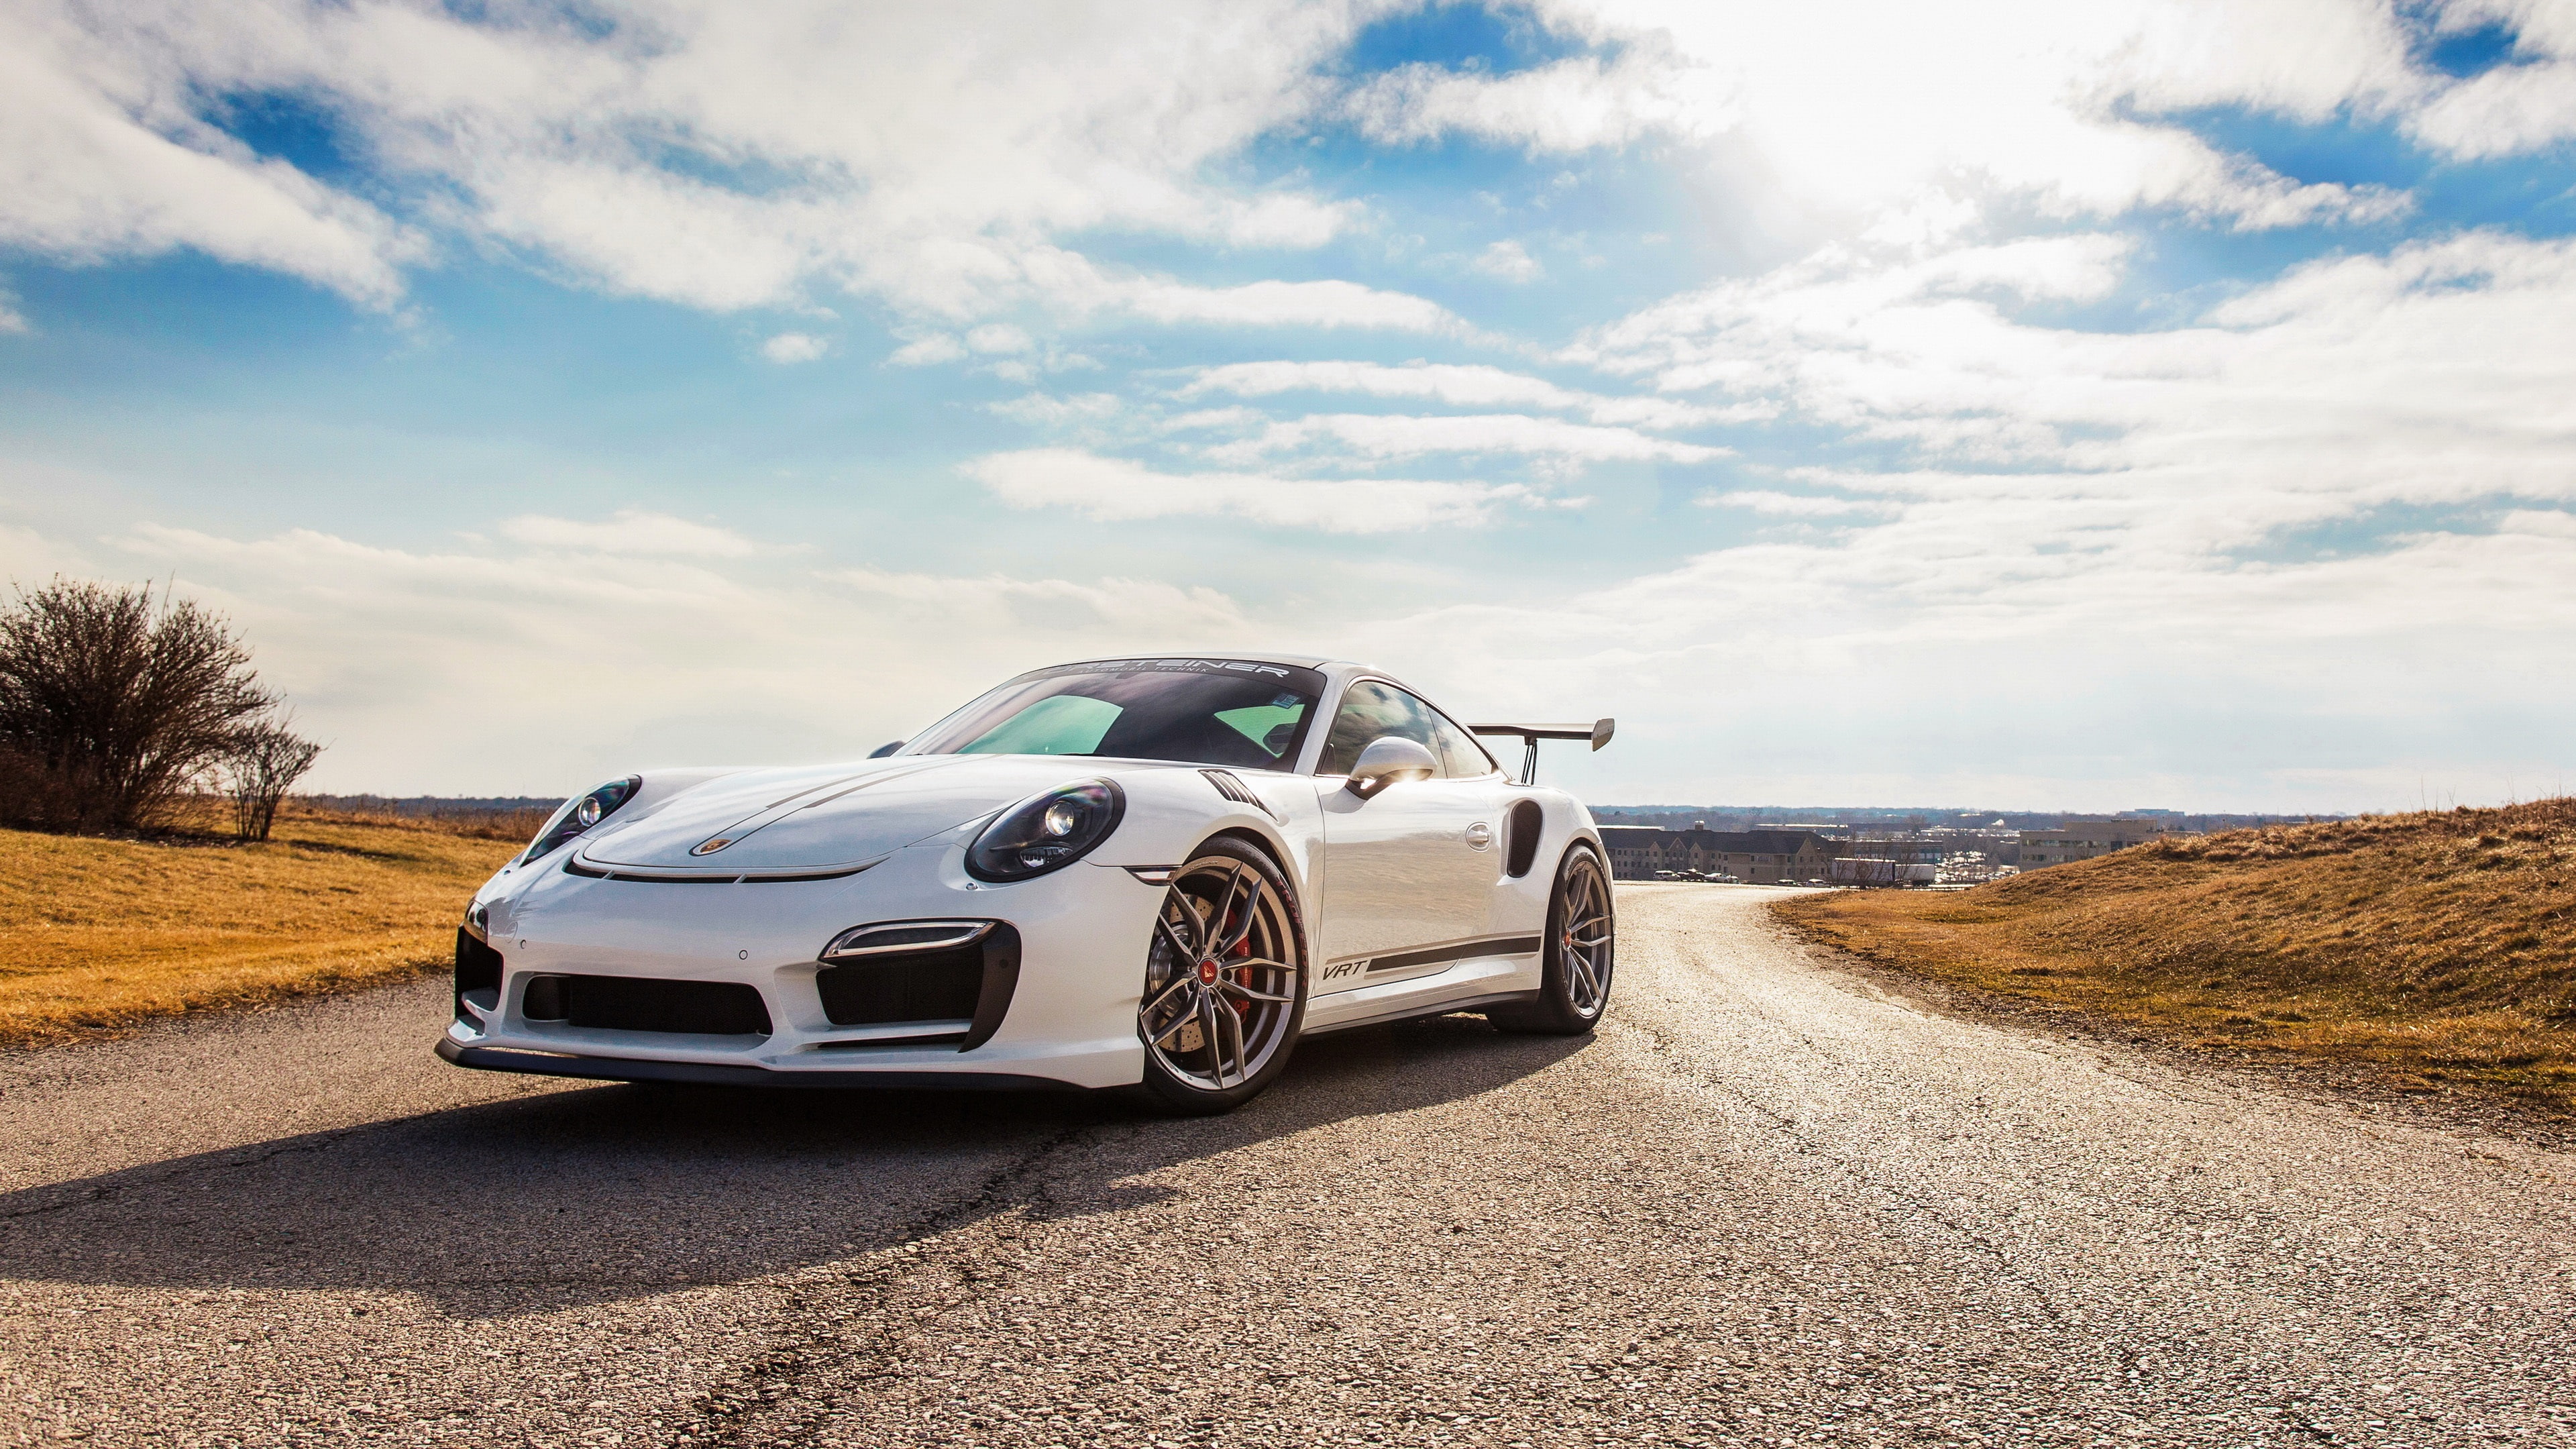 Porsche 911 Turbo V-RT white supercar